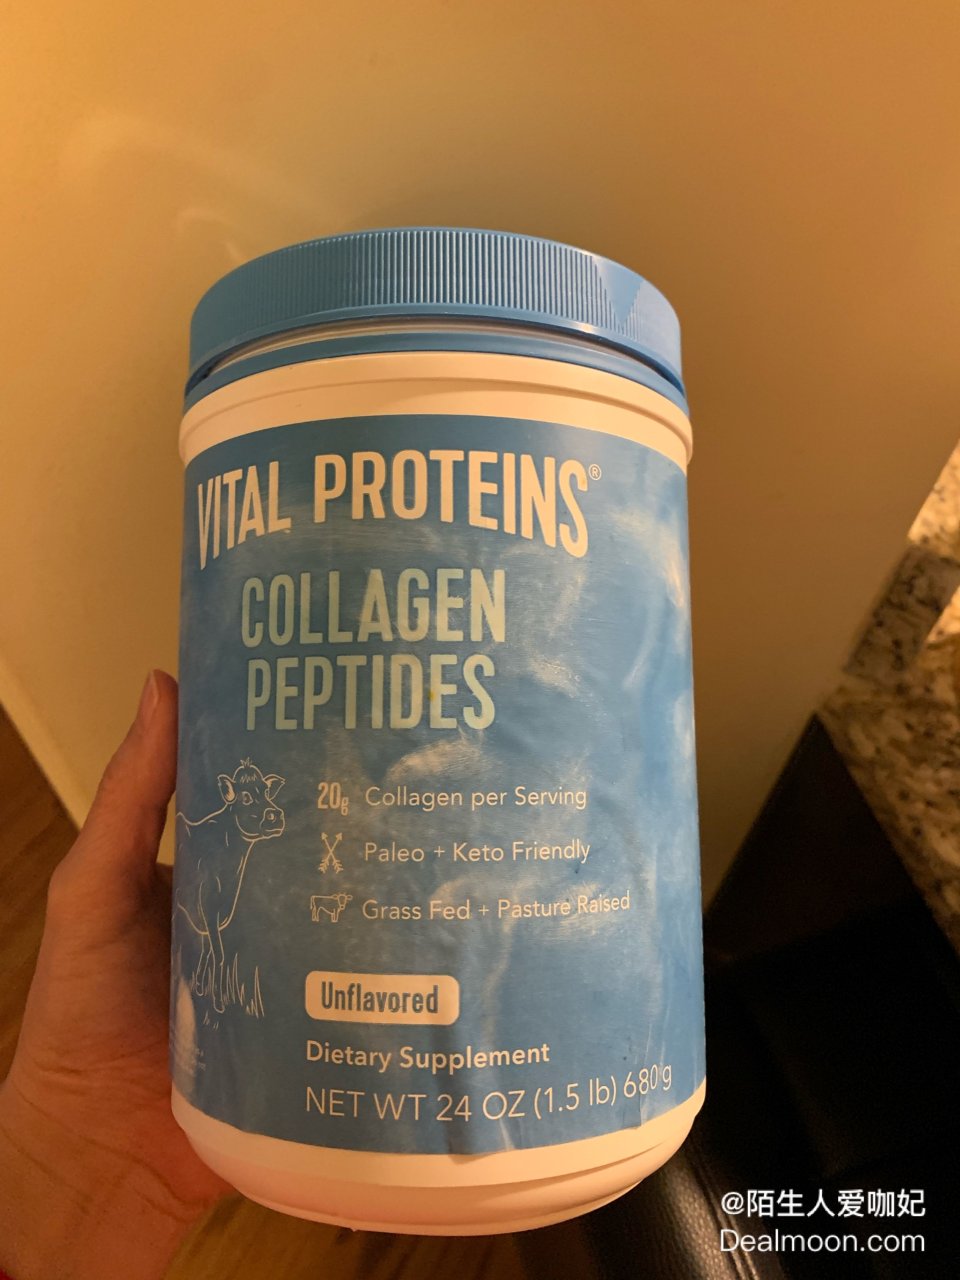 Vital Proteins Collagen Peptides Supplement Powder, Unflavored, 20 oz - Walmart.com